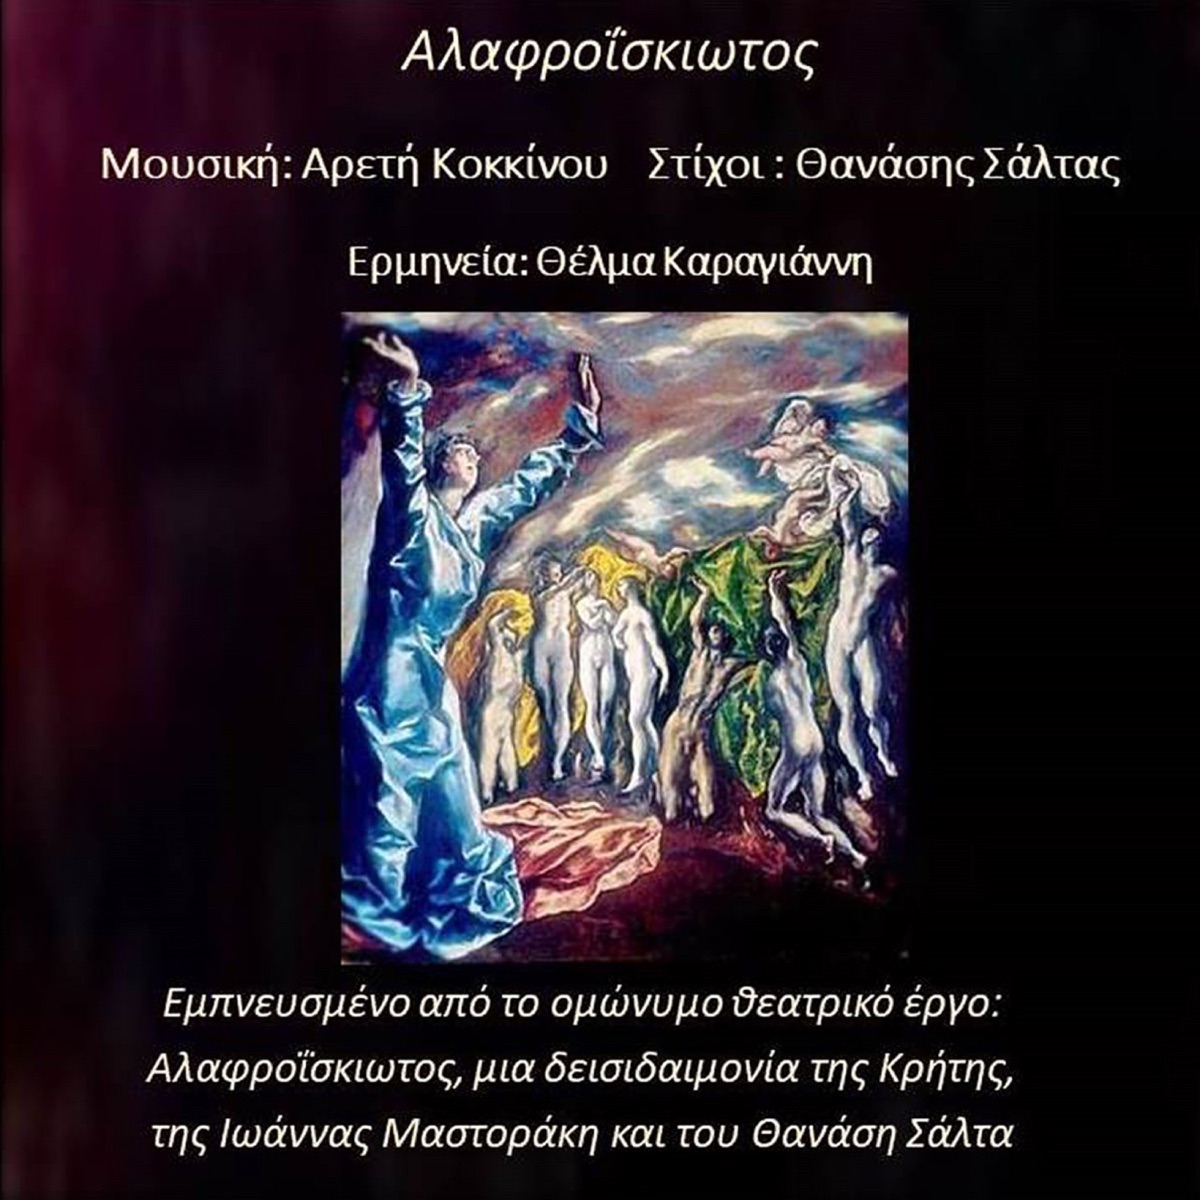 Kori Tou Proinou - Single - Album by Thanasis Saltas, Linos Kokotos & Nikos  Androulakis - Apple Music